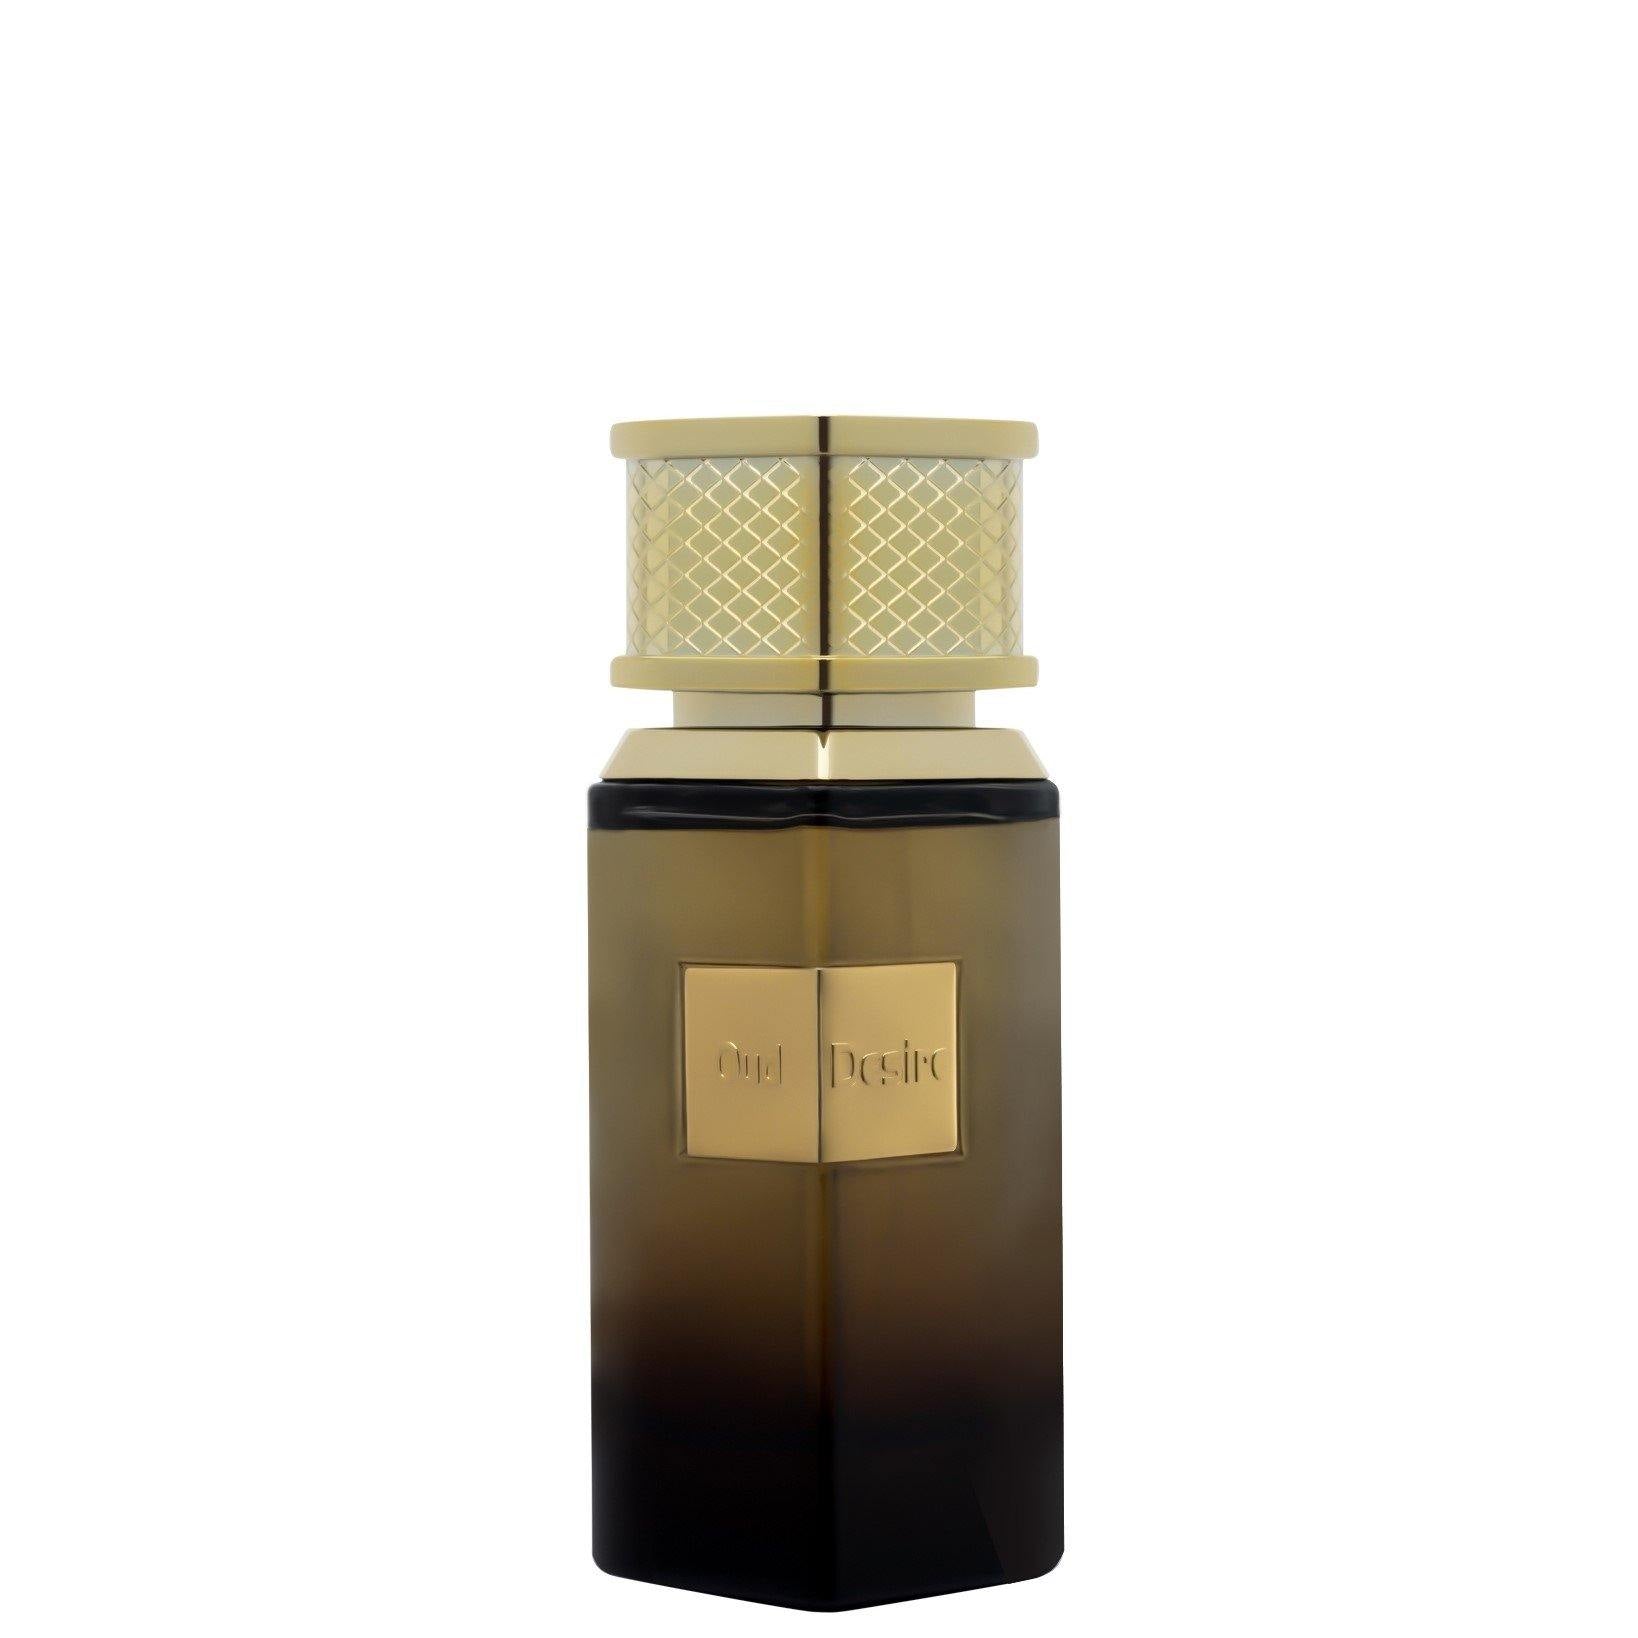 100 ml Eau de Parfum Oud Desire cu Arome Floral-Lemnos Fructate pentru Bărbați - Galeria de Bijuterii